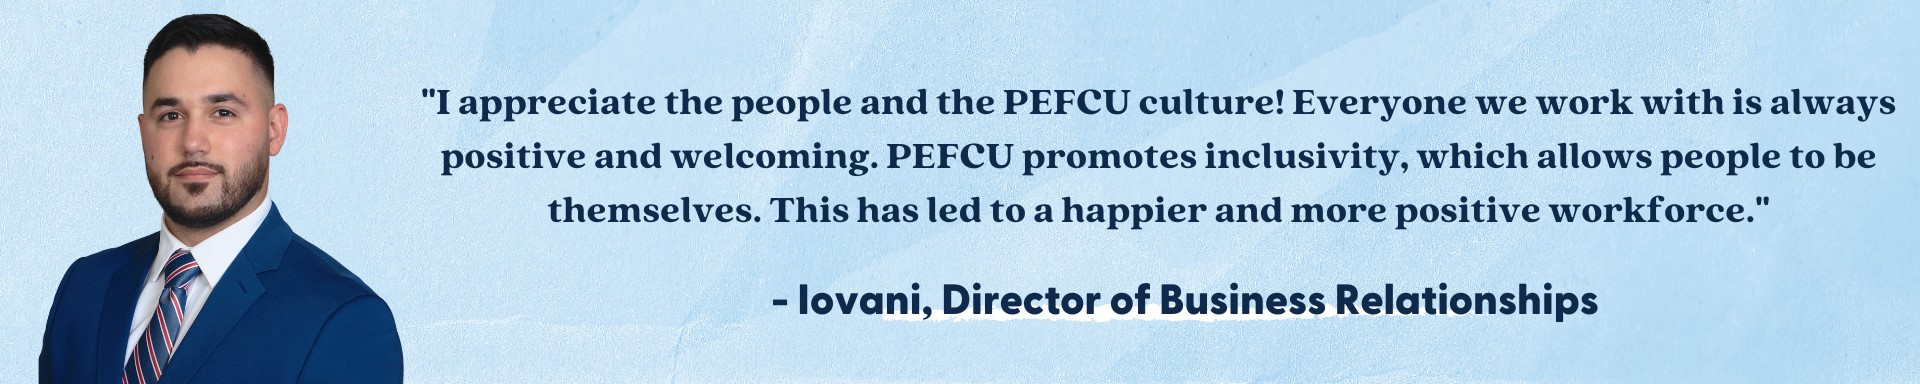 I appreciate the people and the PEFCU culture!